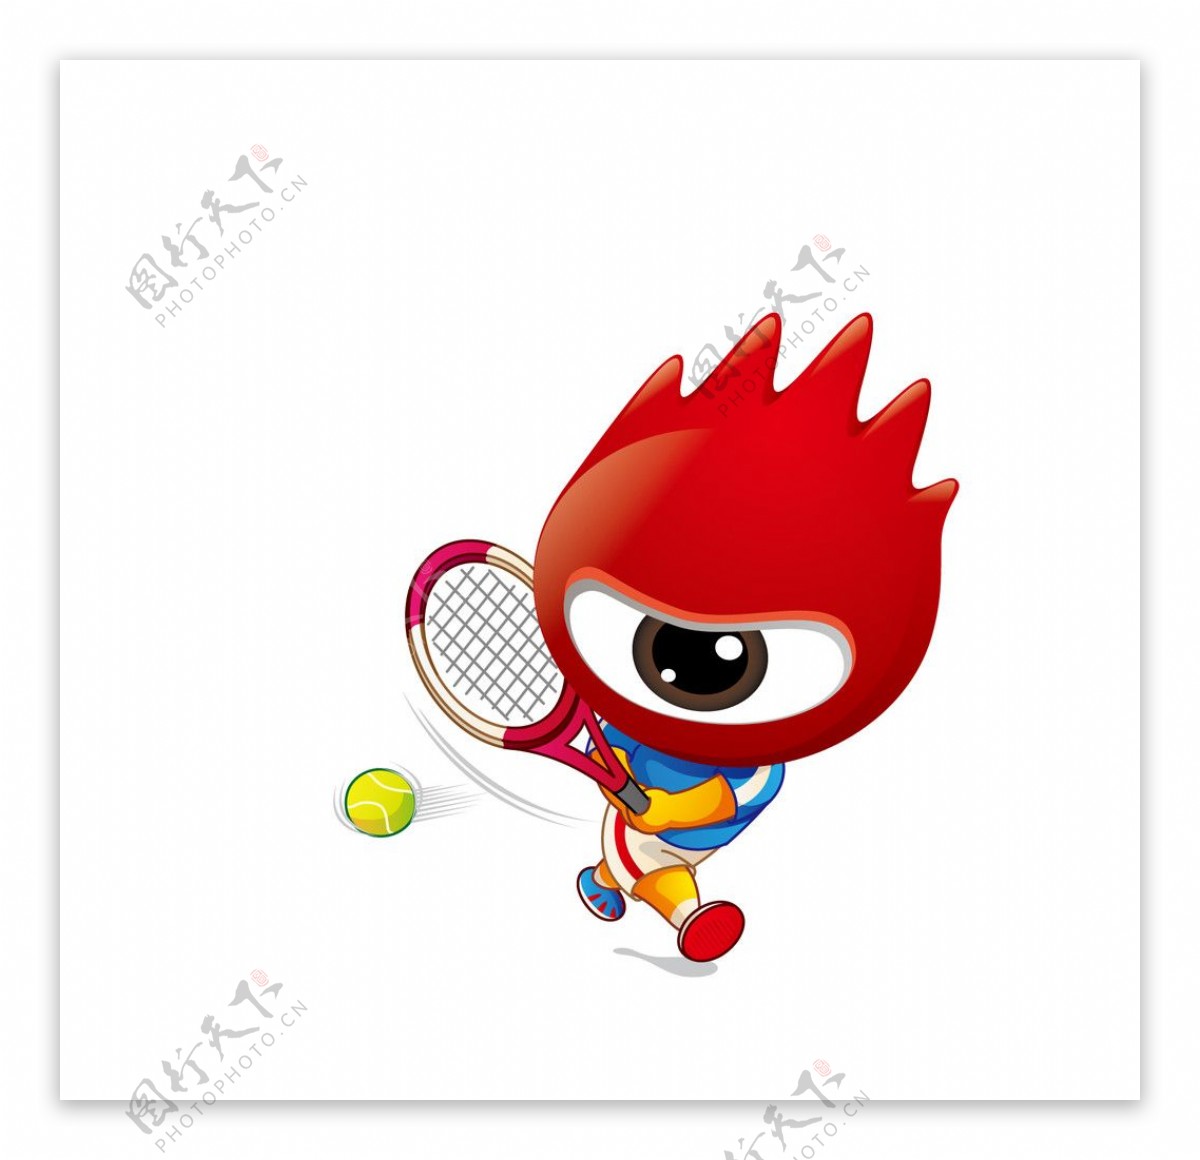 2008北京奥运男子网球小浪人矢量素材图片